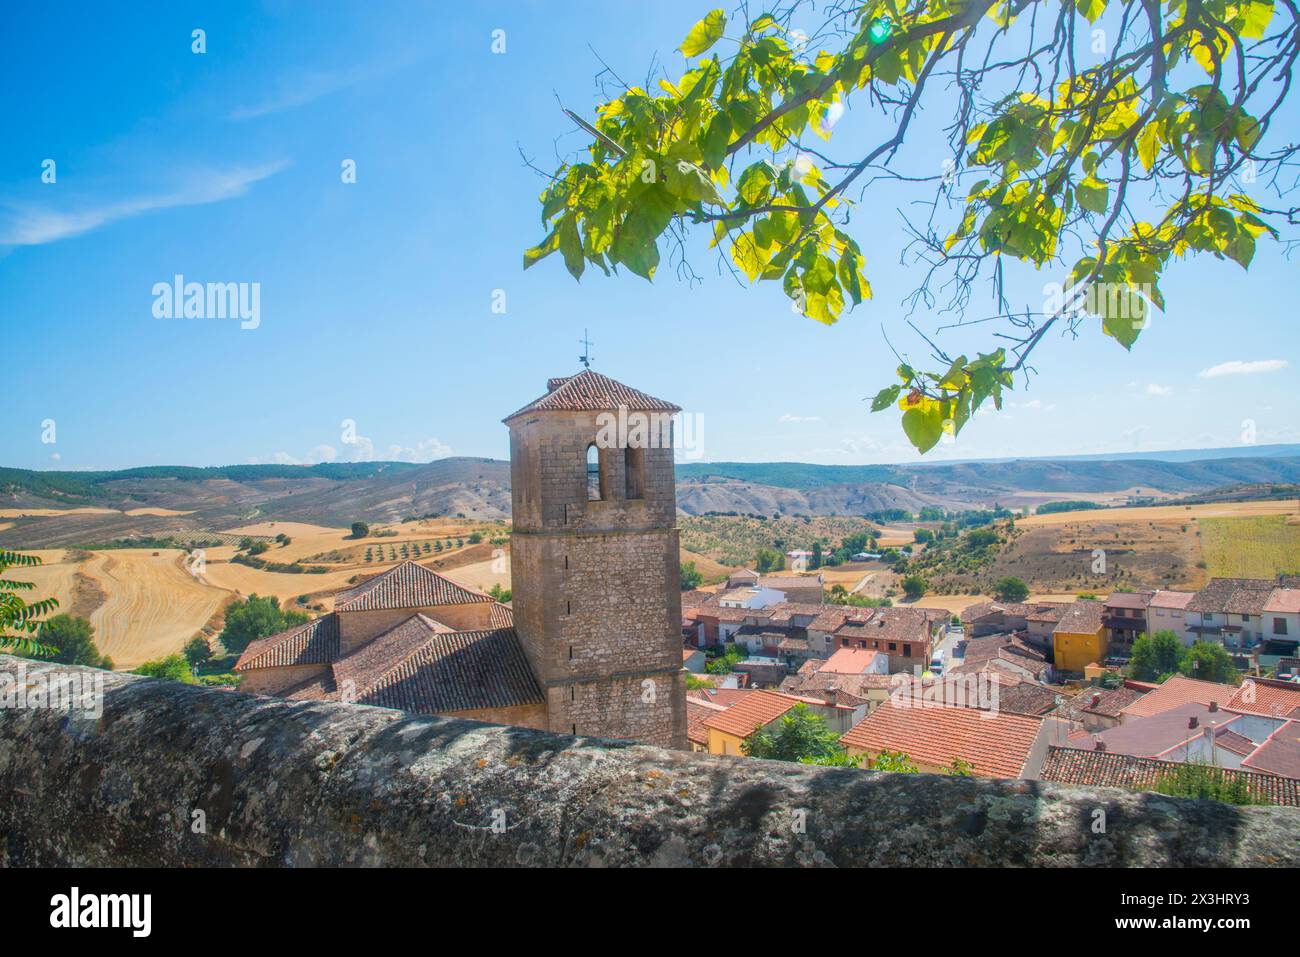 Overview and landscape. Cogolludo, Guadalajara province, Castilla La Mancha, Spain. Stock Photo